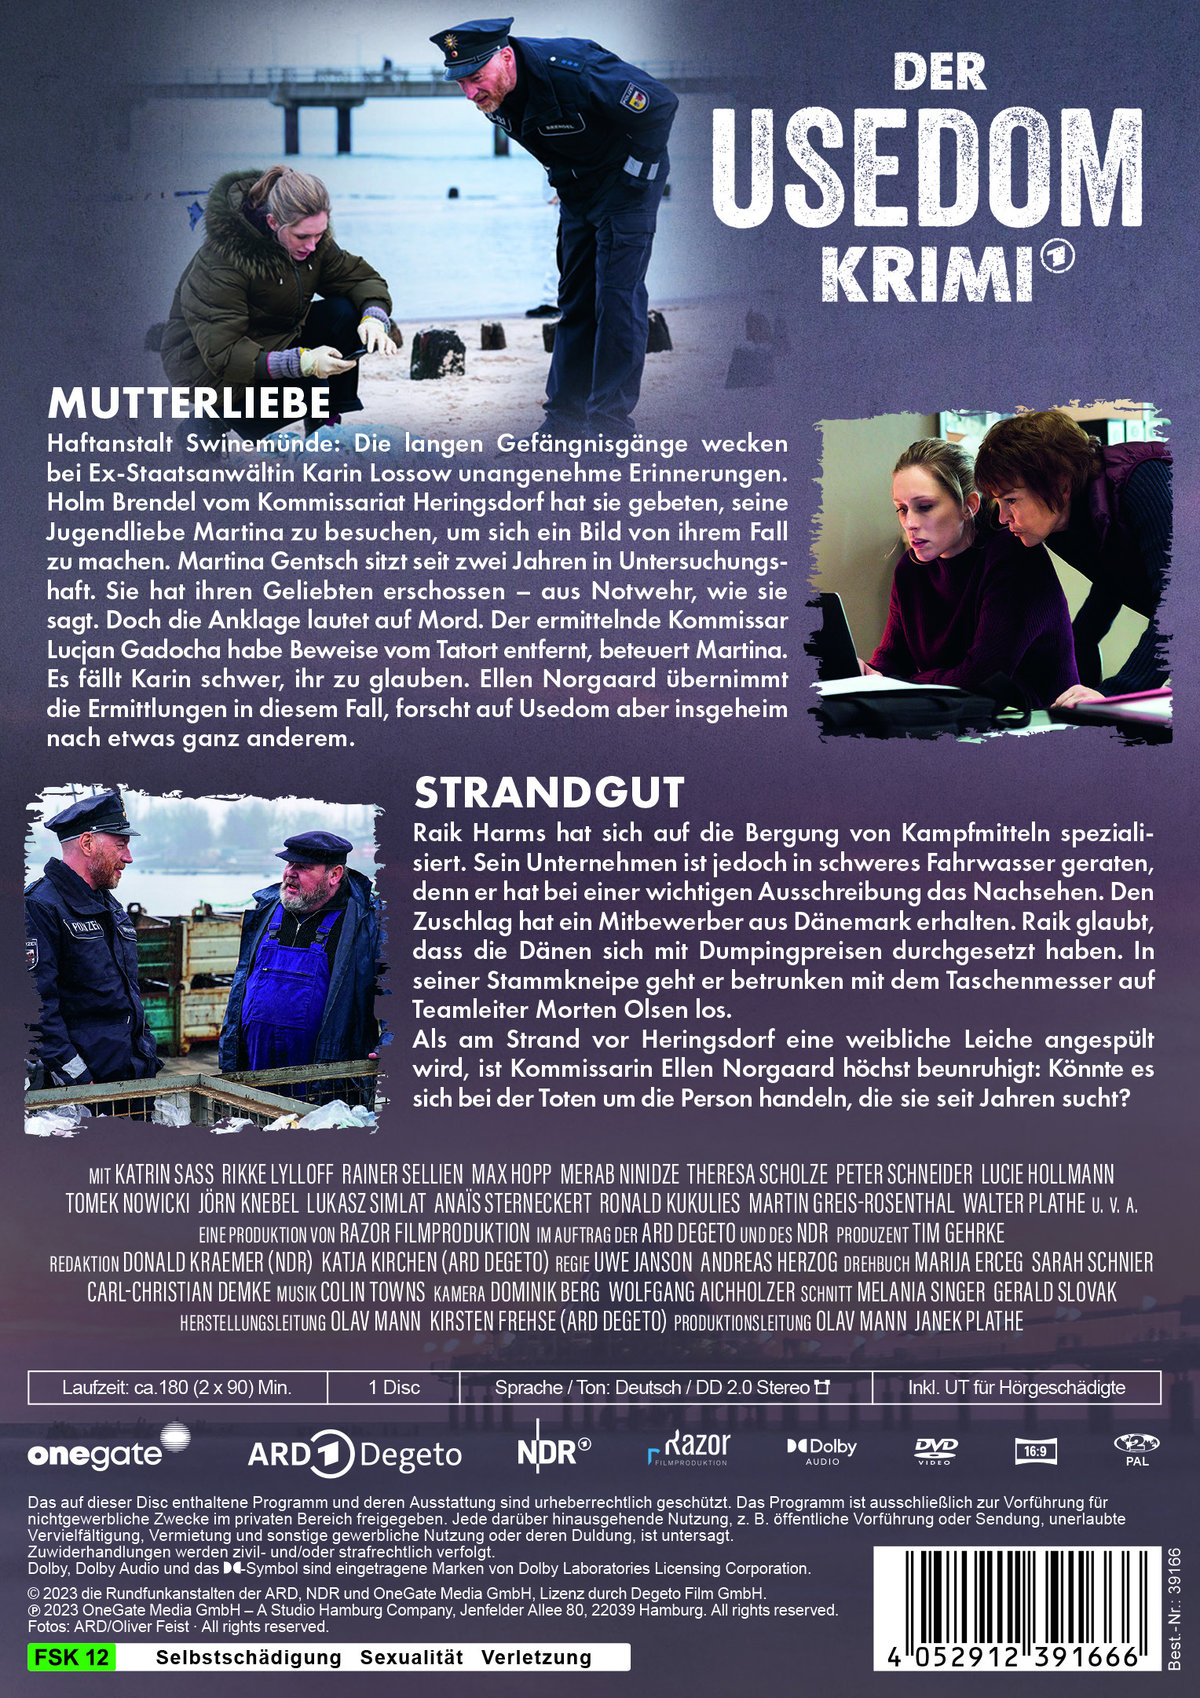 Der Usedom-Krimi: Mutterliebe / Strandgut  (DVD)